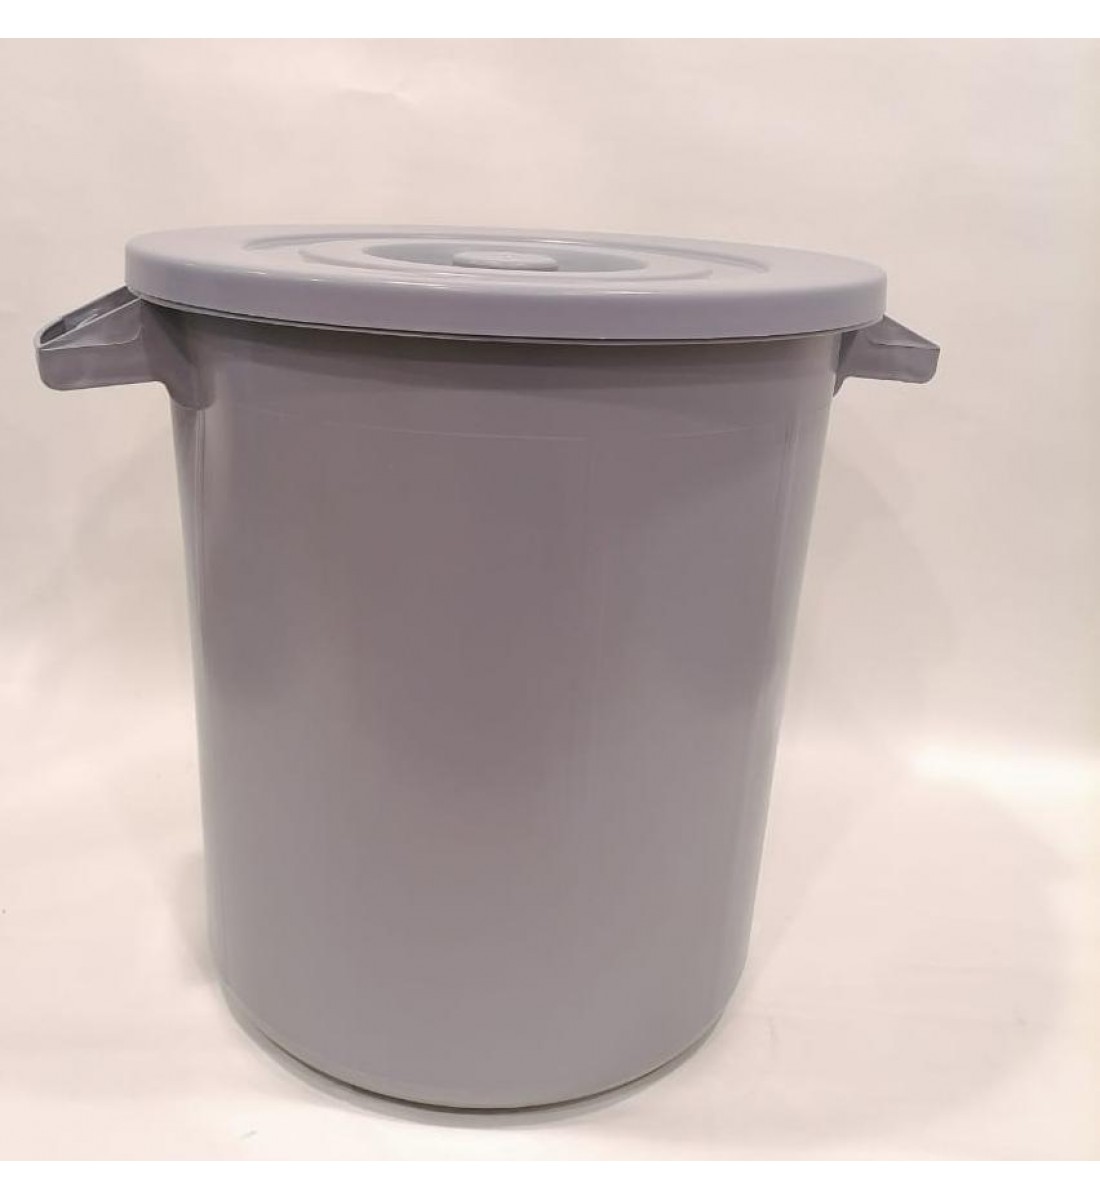 Wastebasket - plastic 40 liters